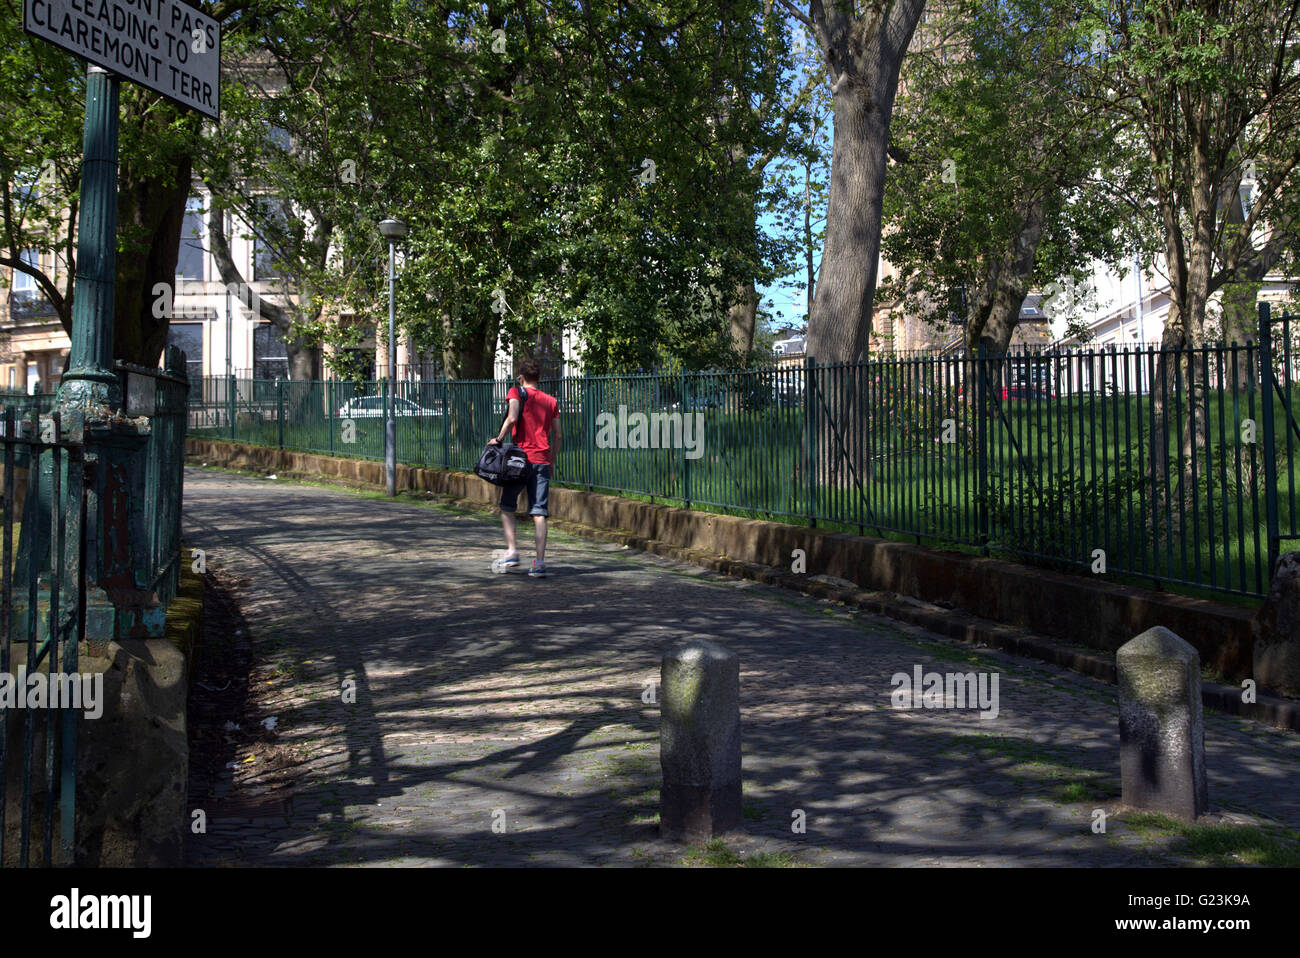 Jeune homme marchant dans la ville pittoresque de Claremont col,Park Circus, Glasgow, Ecosse, Royaume-Uni. Banque D'Images